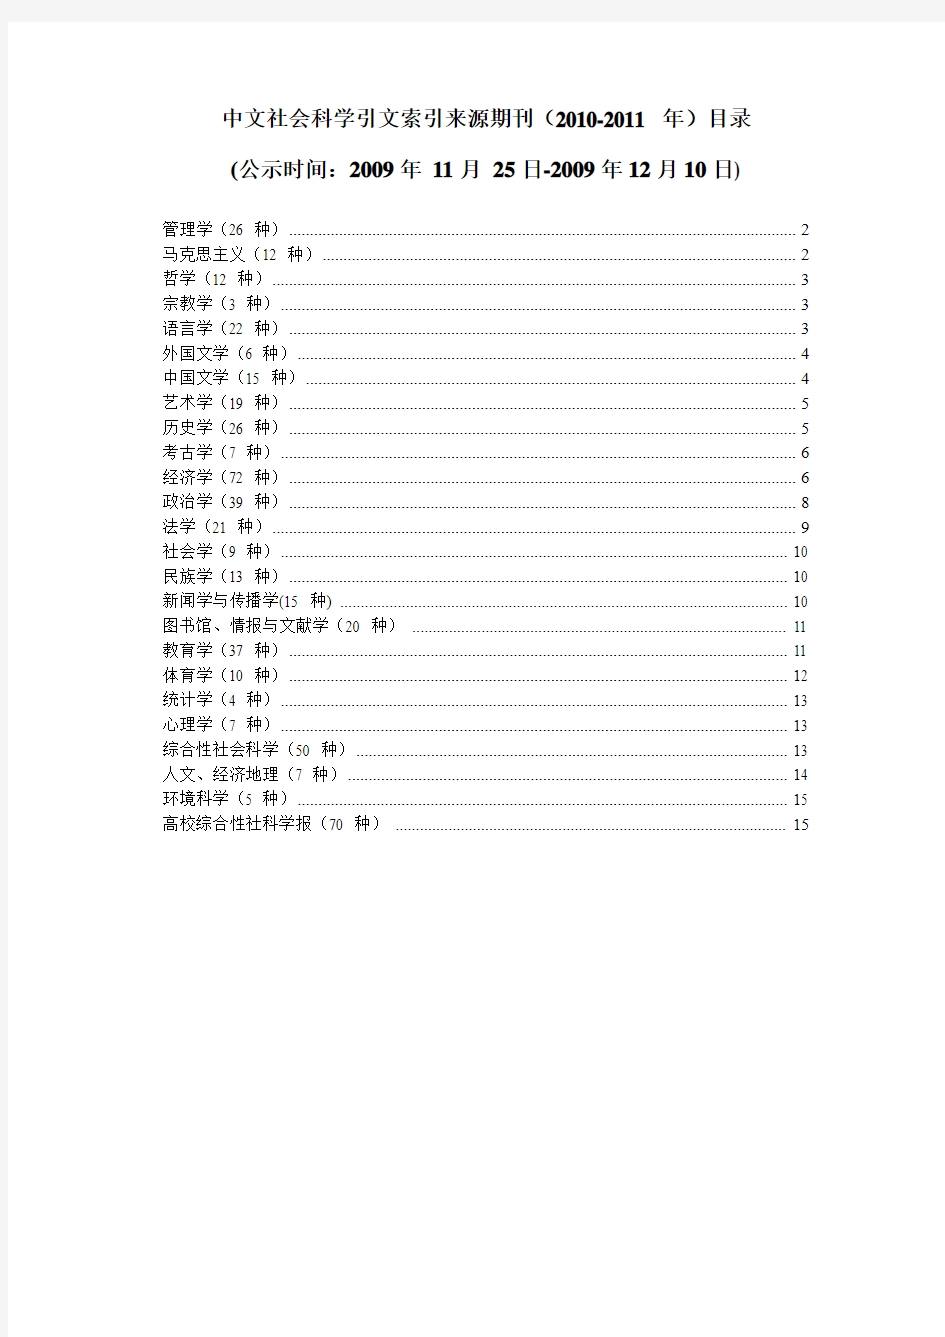 中文社会科学引文索引来源期刊(2010-2011年)目录.